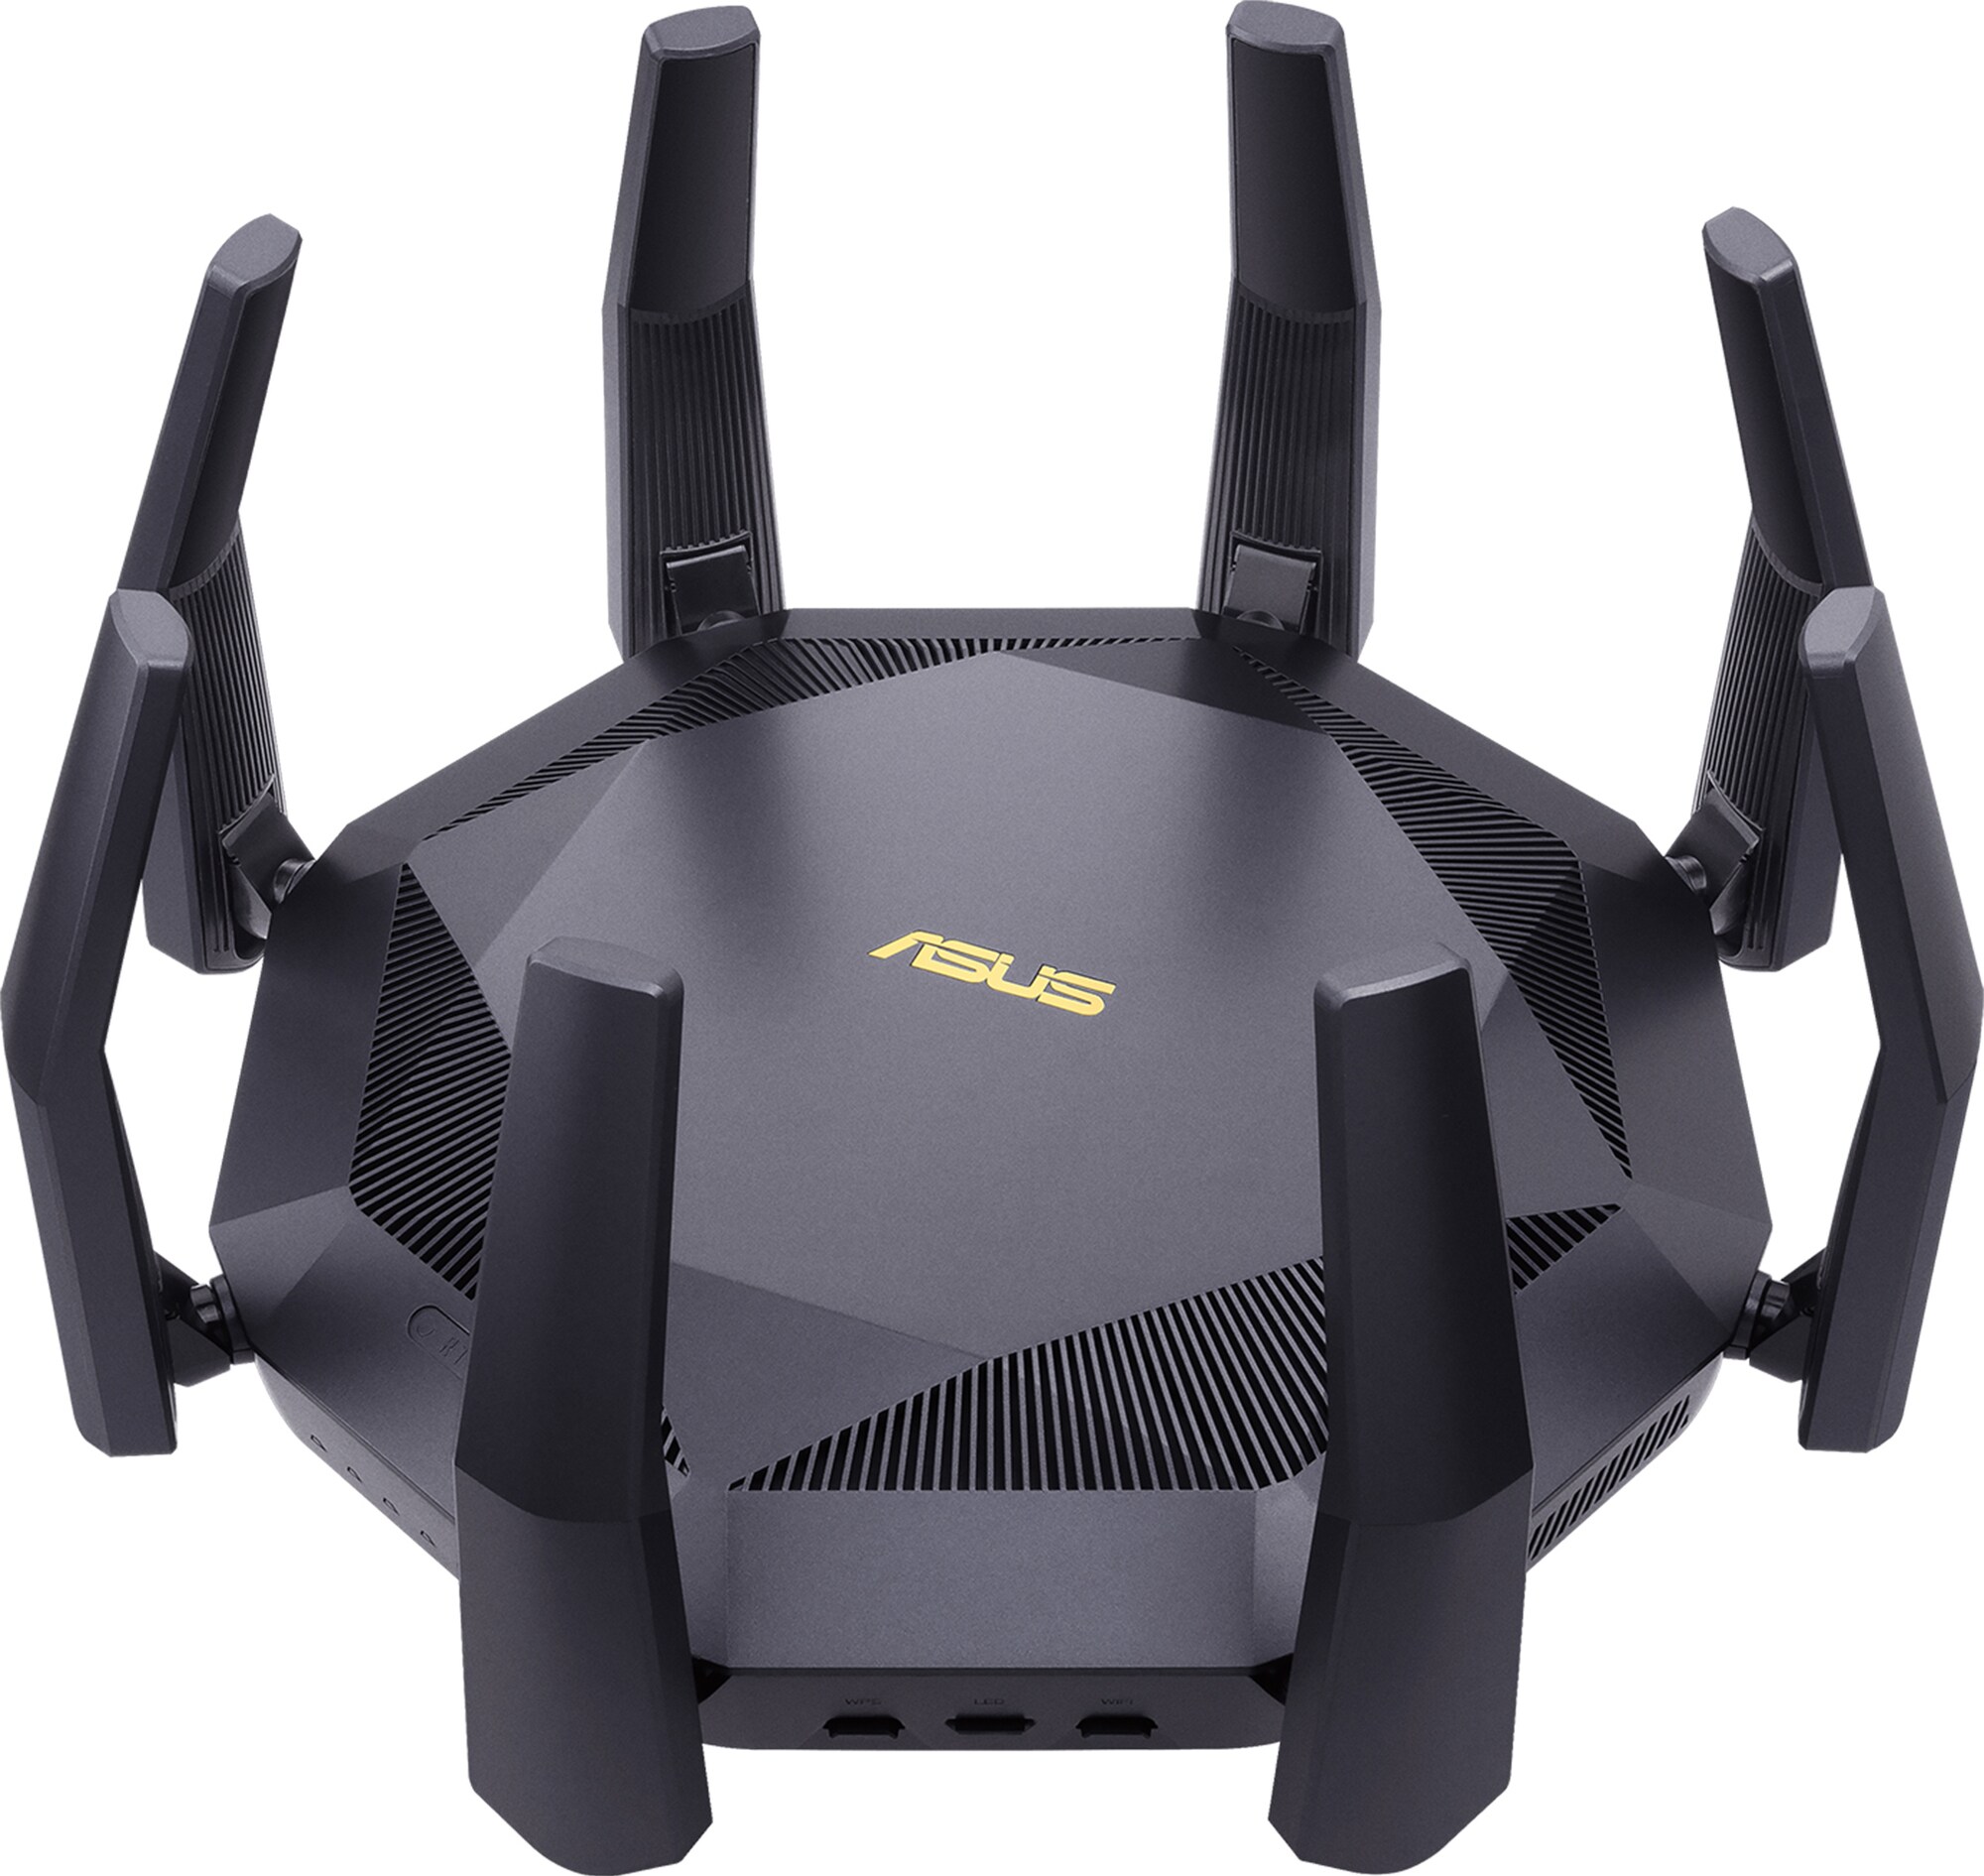 ASUS RTAX89X WiFi-router - Elkjøp